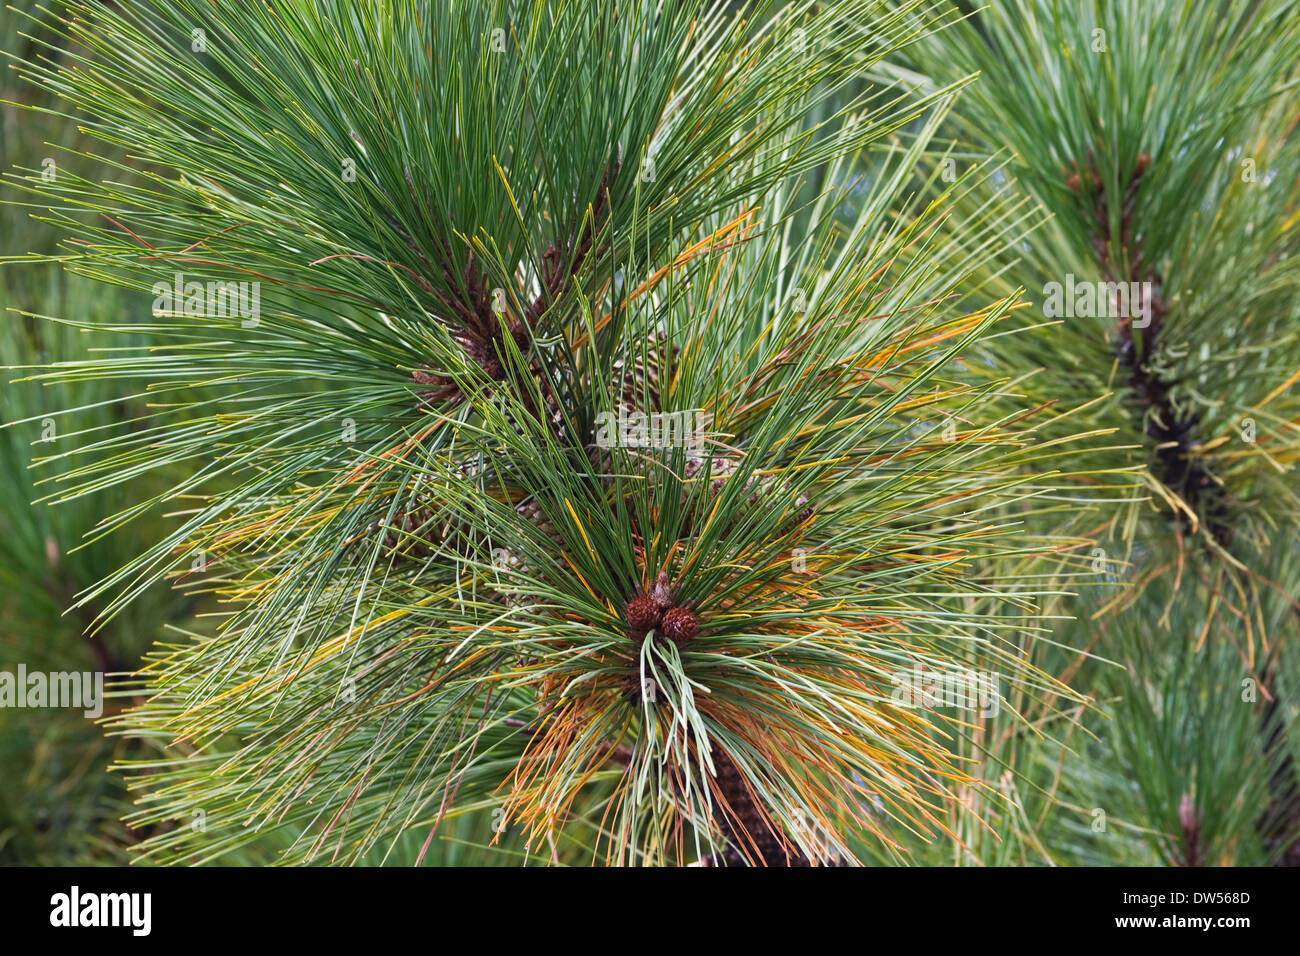 Virginia pine (Pinus virginiana) Stock Photo